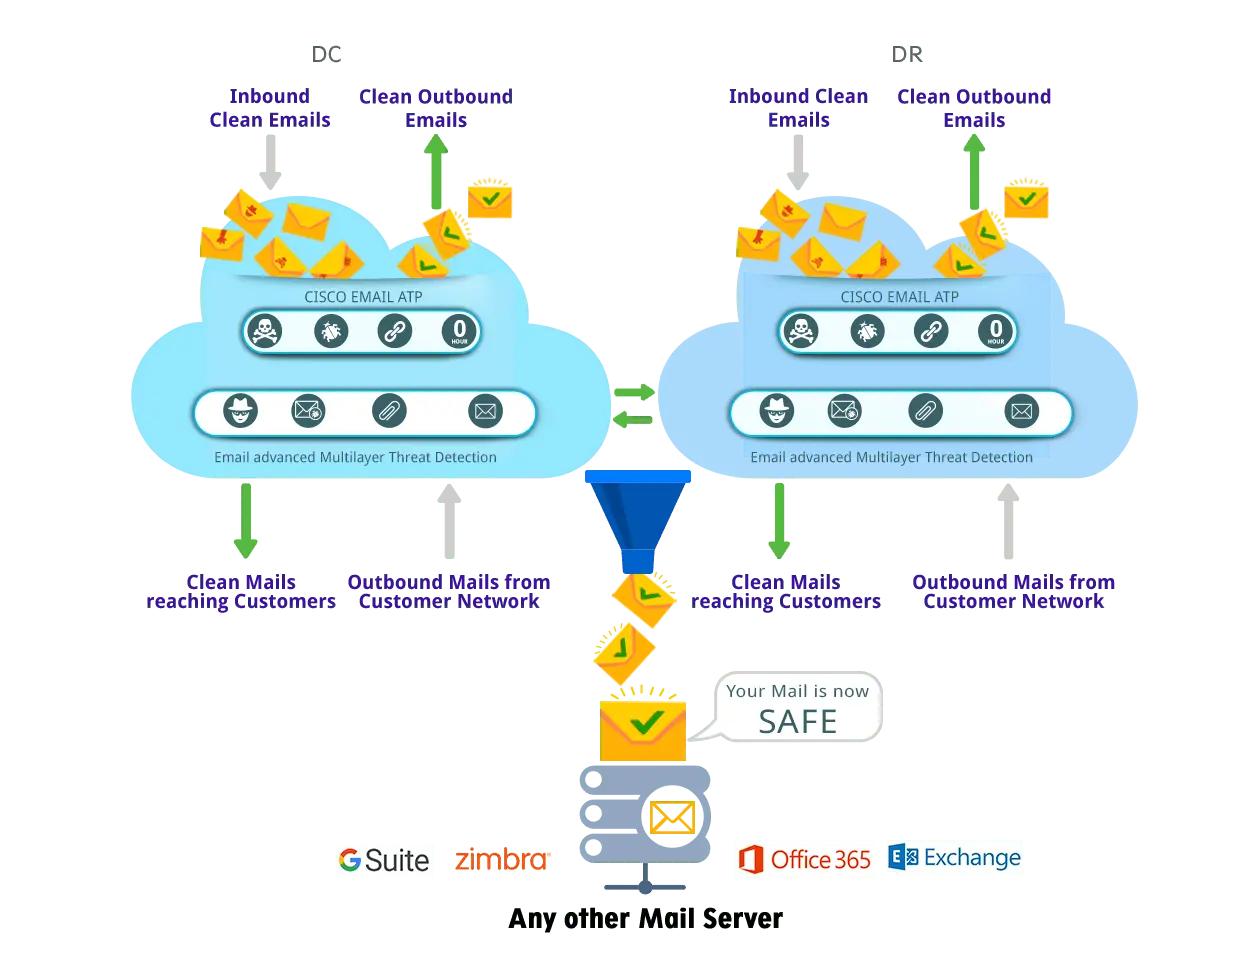 Cloud-Ciscoironportemailatp